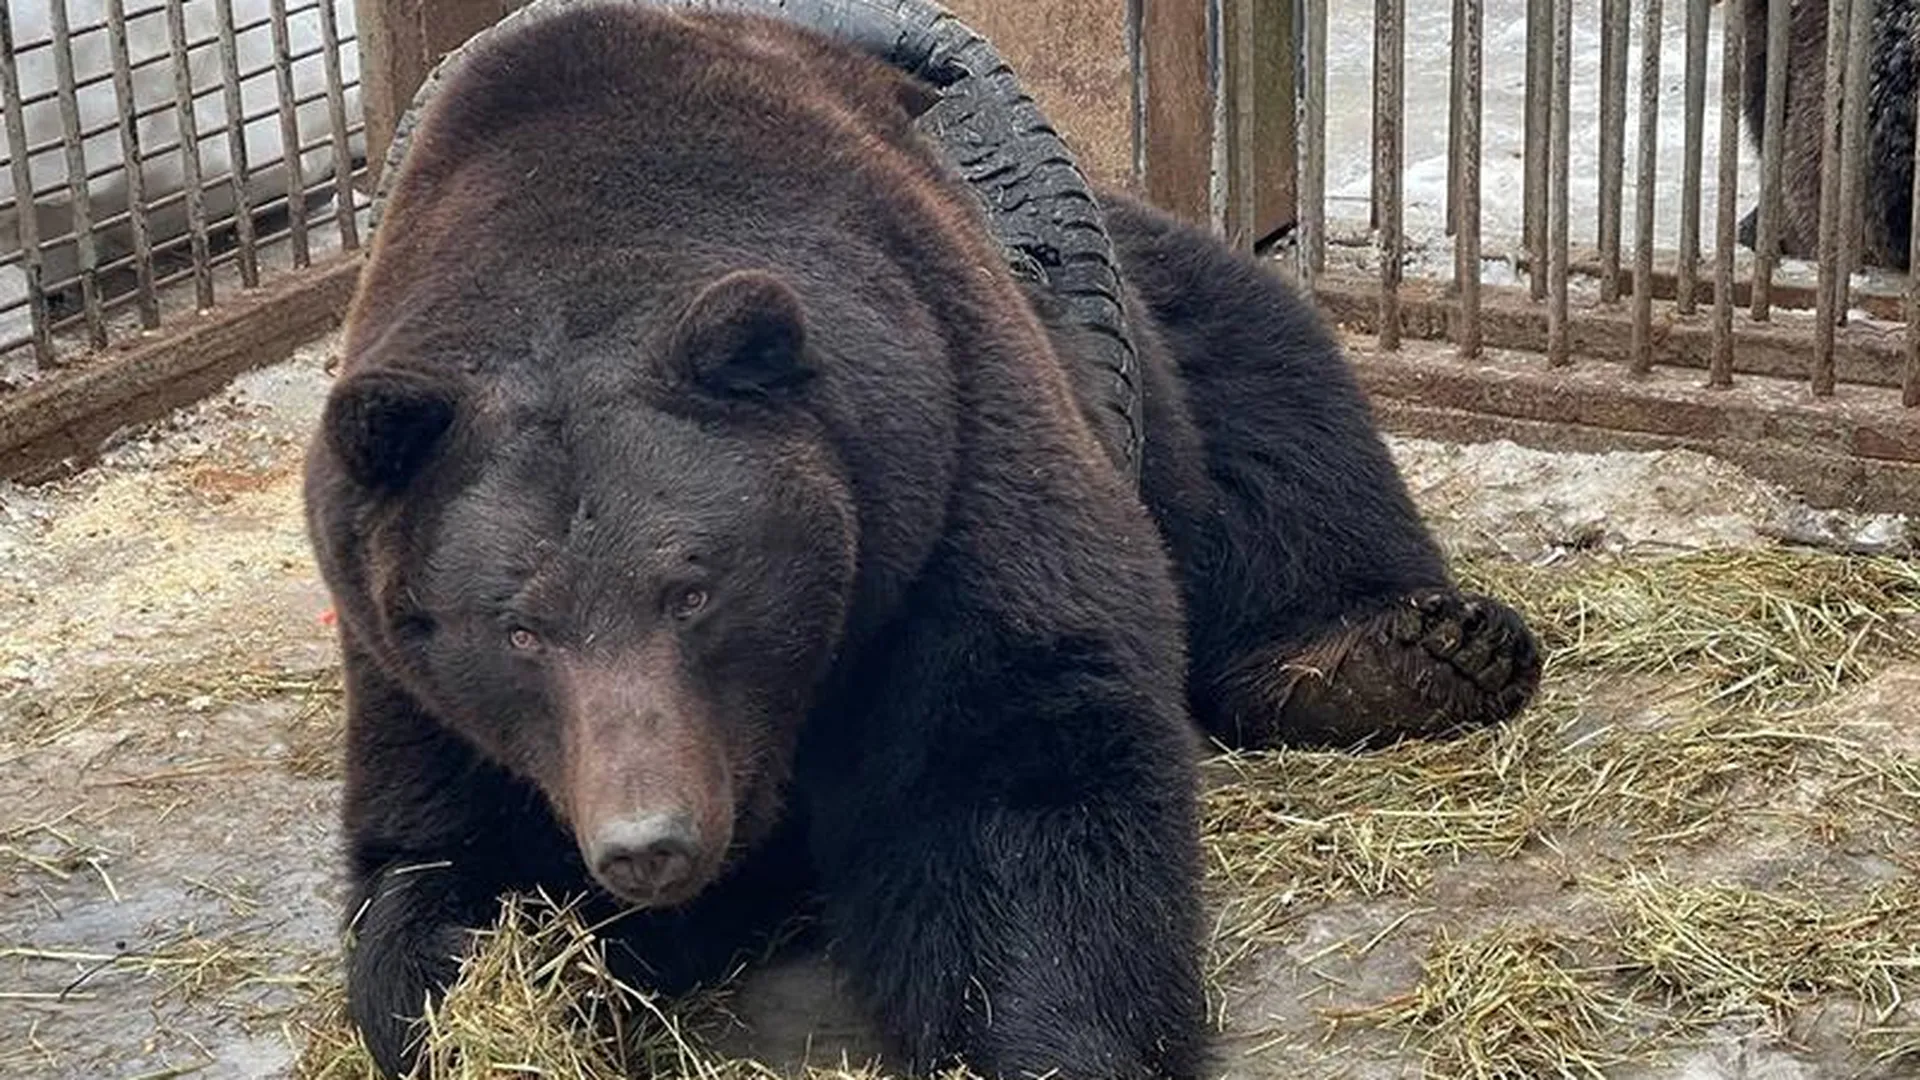 Спасатели в Подмосковье сняли с медведя шину, которую он ухитрился надеть на себя